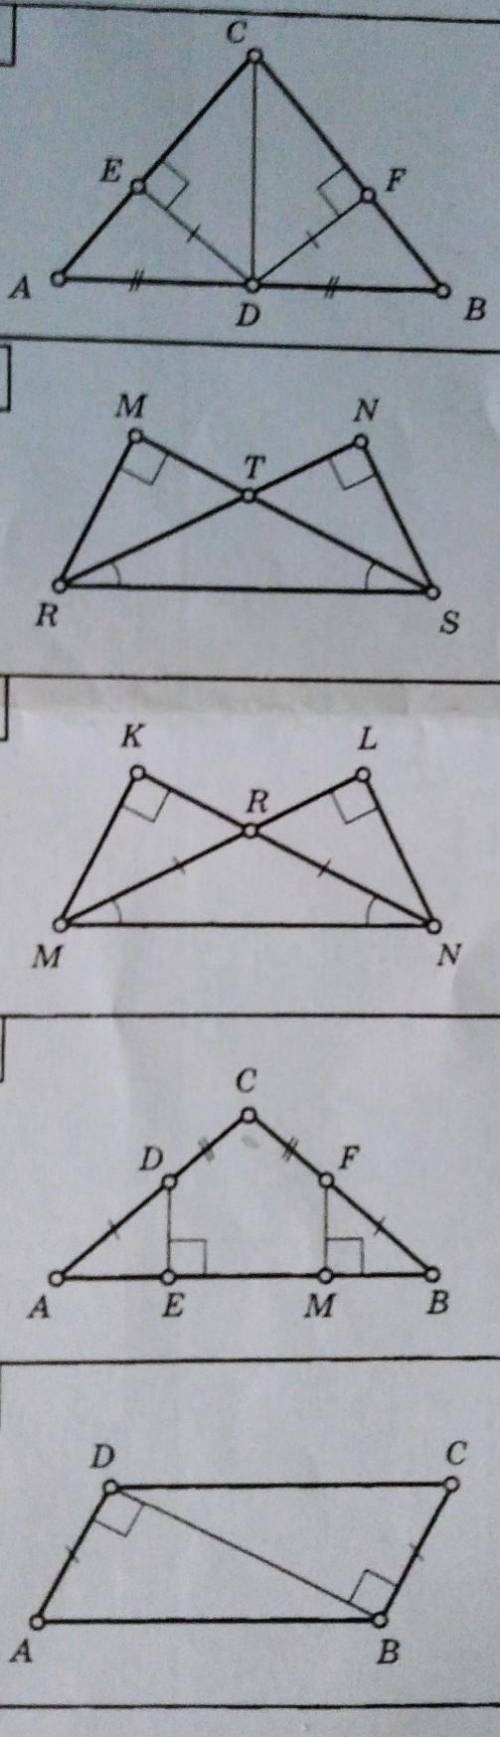 Найдите пары равных треугольников и докажите их равенства очень надои​